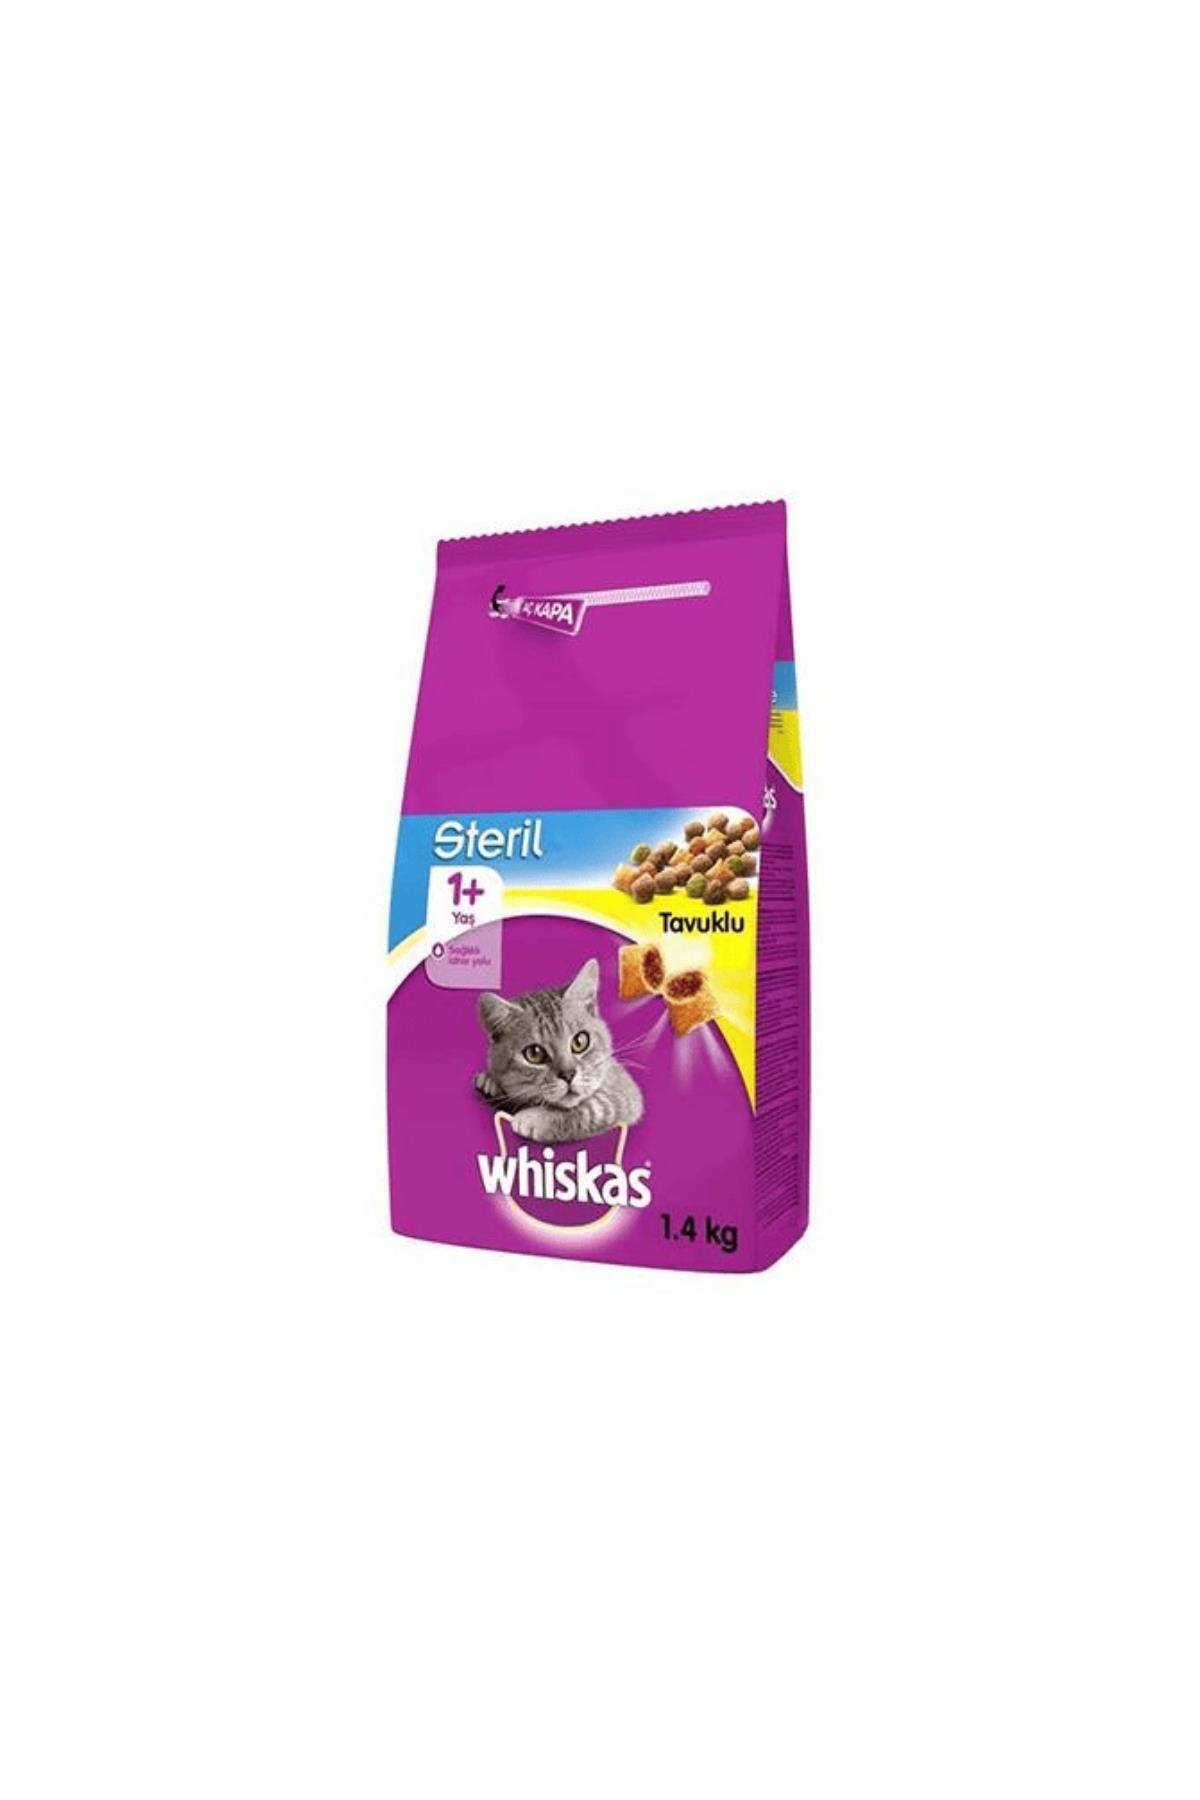 Whiskas Kısır Tavuklu Kedi Maması 1.4 Kg